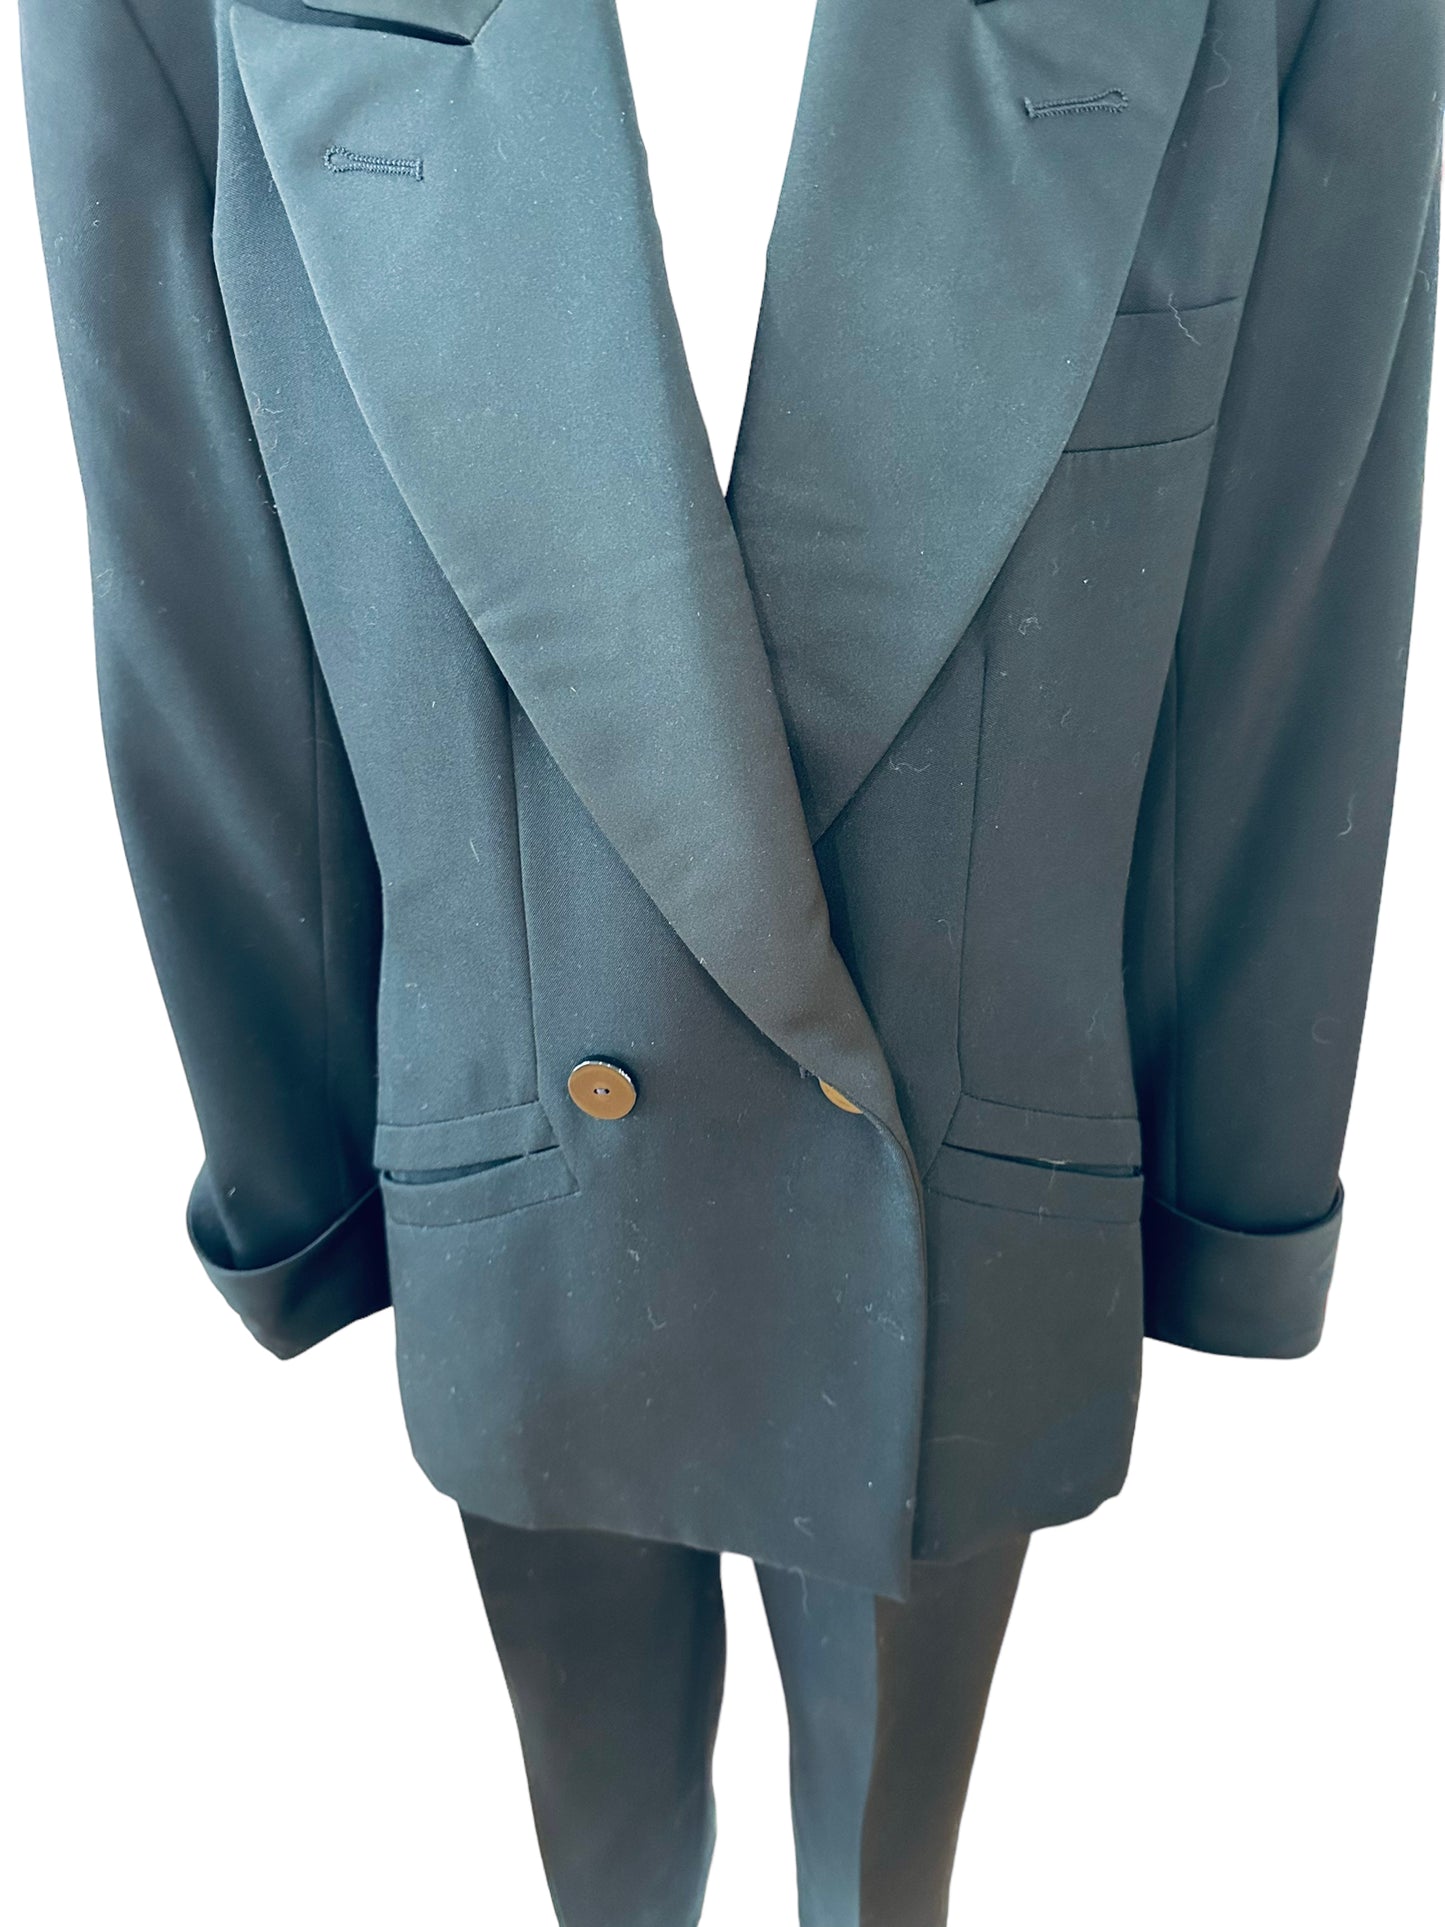 Yves Saint Laurent YSL 1980s 3 piece tuxedo Le smoking suit excellent I 42